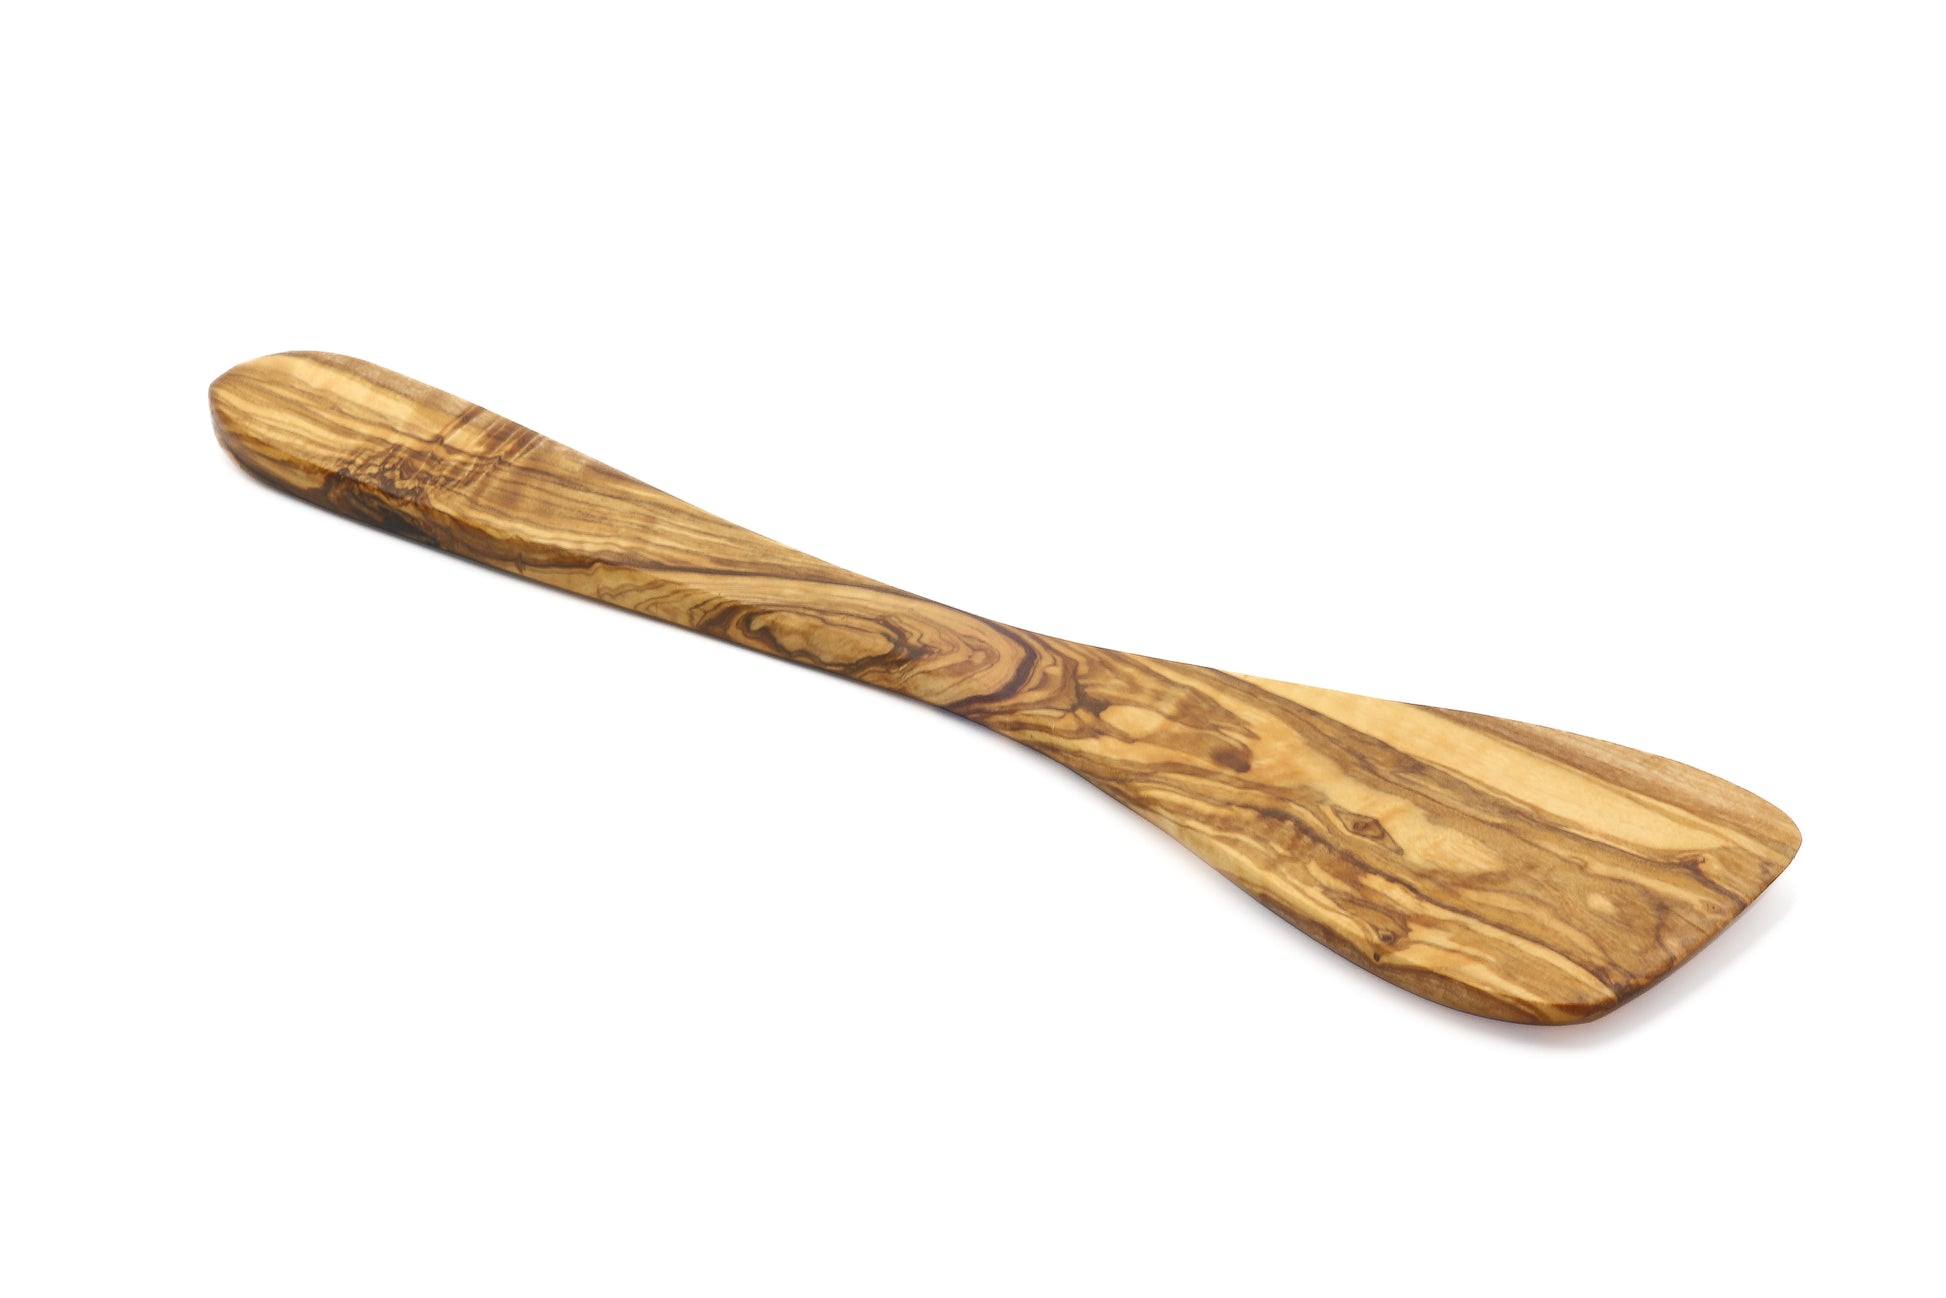 Wooden utensil for flipping